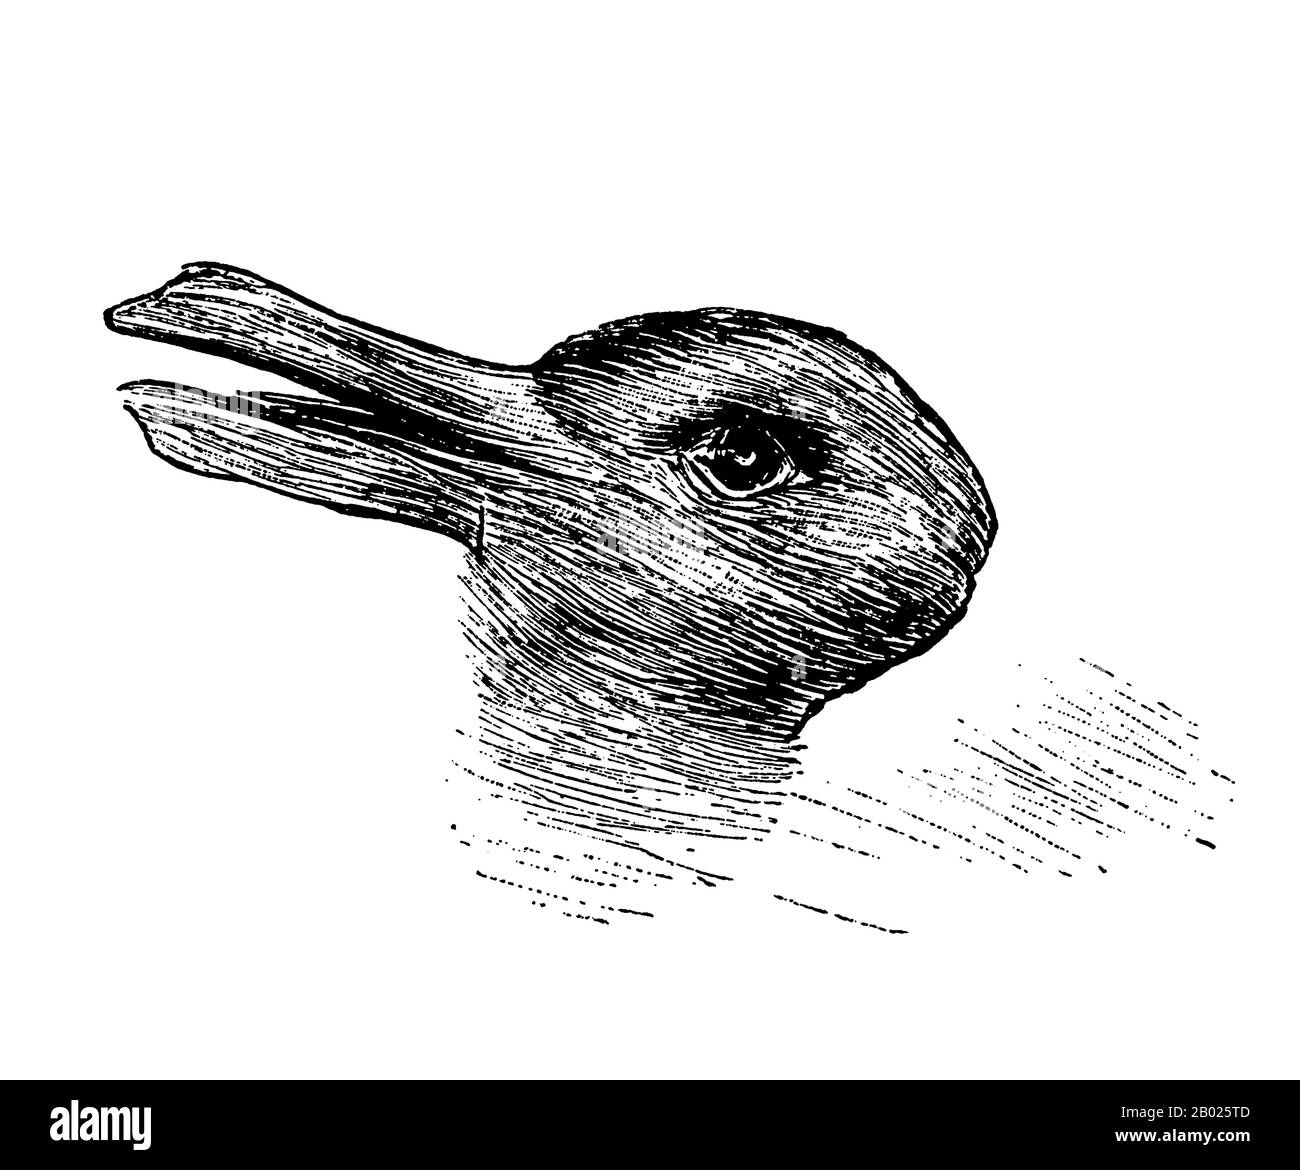 Illusion optique Duck-Rabbit publiée pour la première fois dans Fliegende Blatter (Munich), 23 octobre 1892, p. 147. Le même dessin, ou une version similaire, a par la suite été attribué à Joseph Jastrow (1899) et à tort à Ludwig Wittgenstein (2002). La version Fliegende Blatte, par un artiste anonyme, semble être la plus ancienne et la première version publiée. Banque D'Images